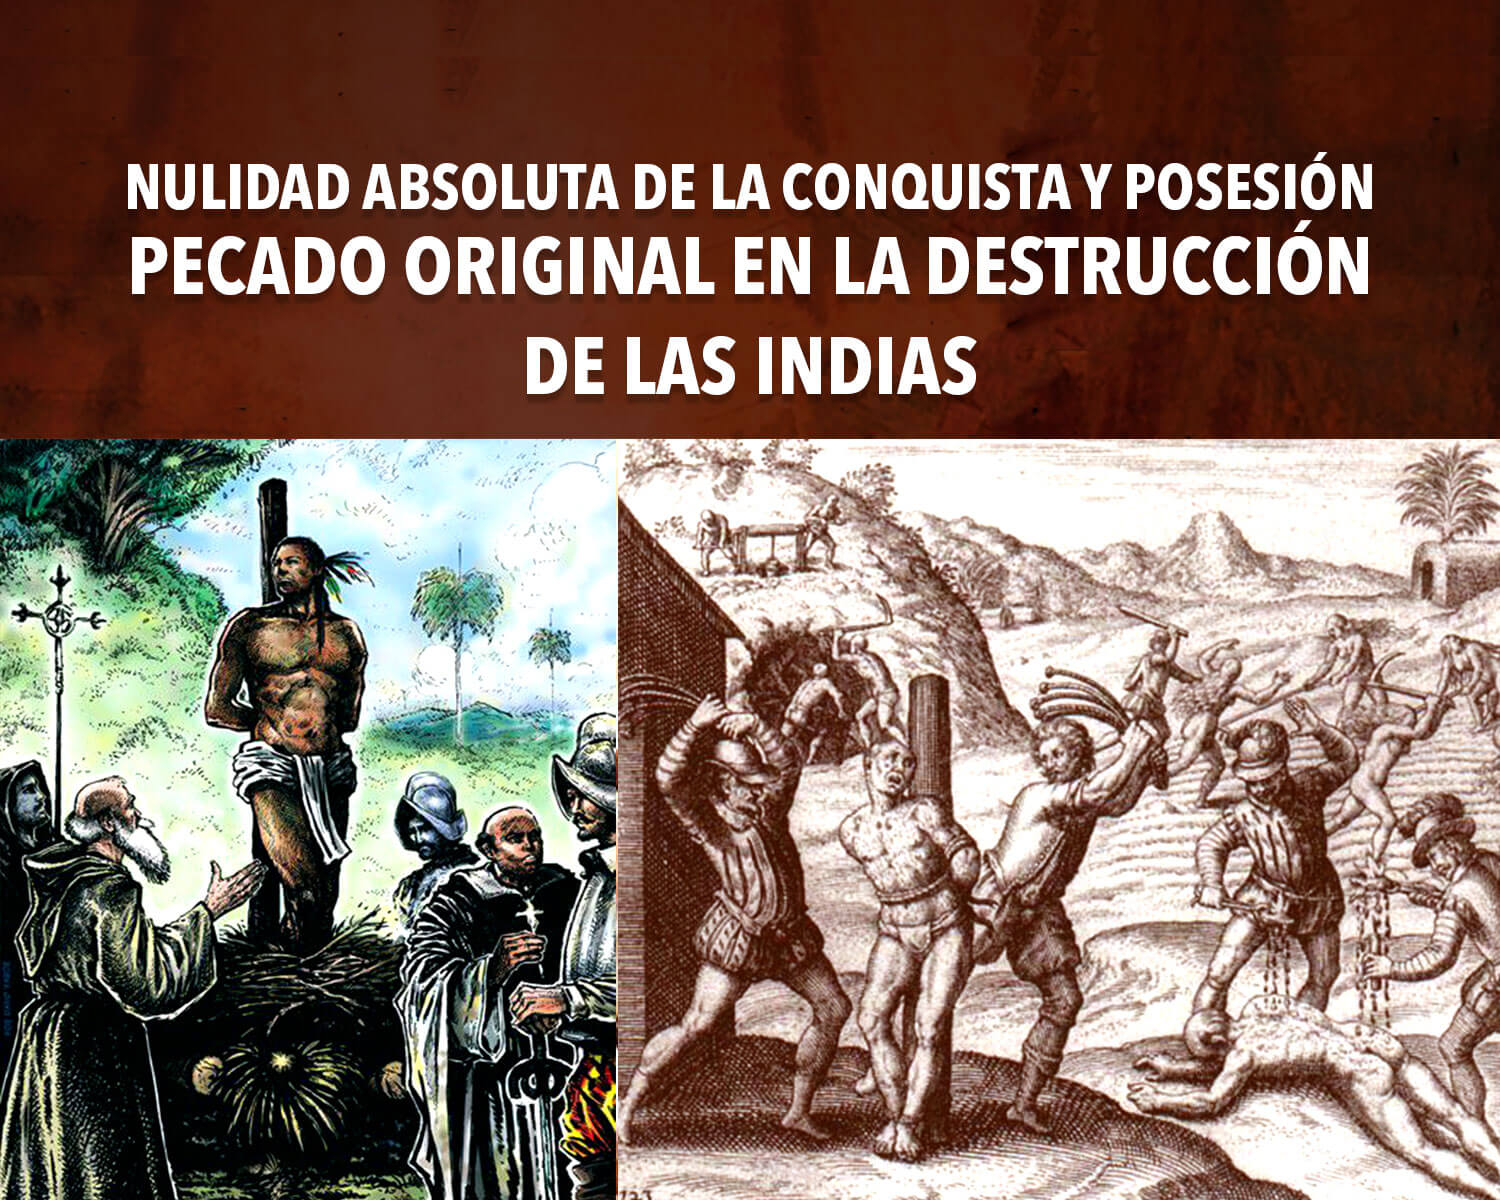 Nulidad absoluta de la conquista y posesión - Pecado original en la destrucción de Las Indias